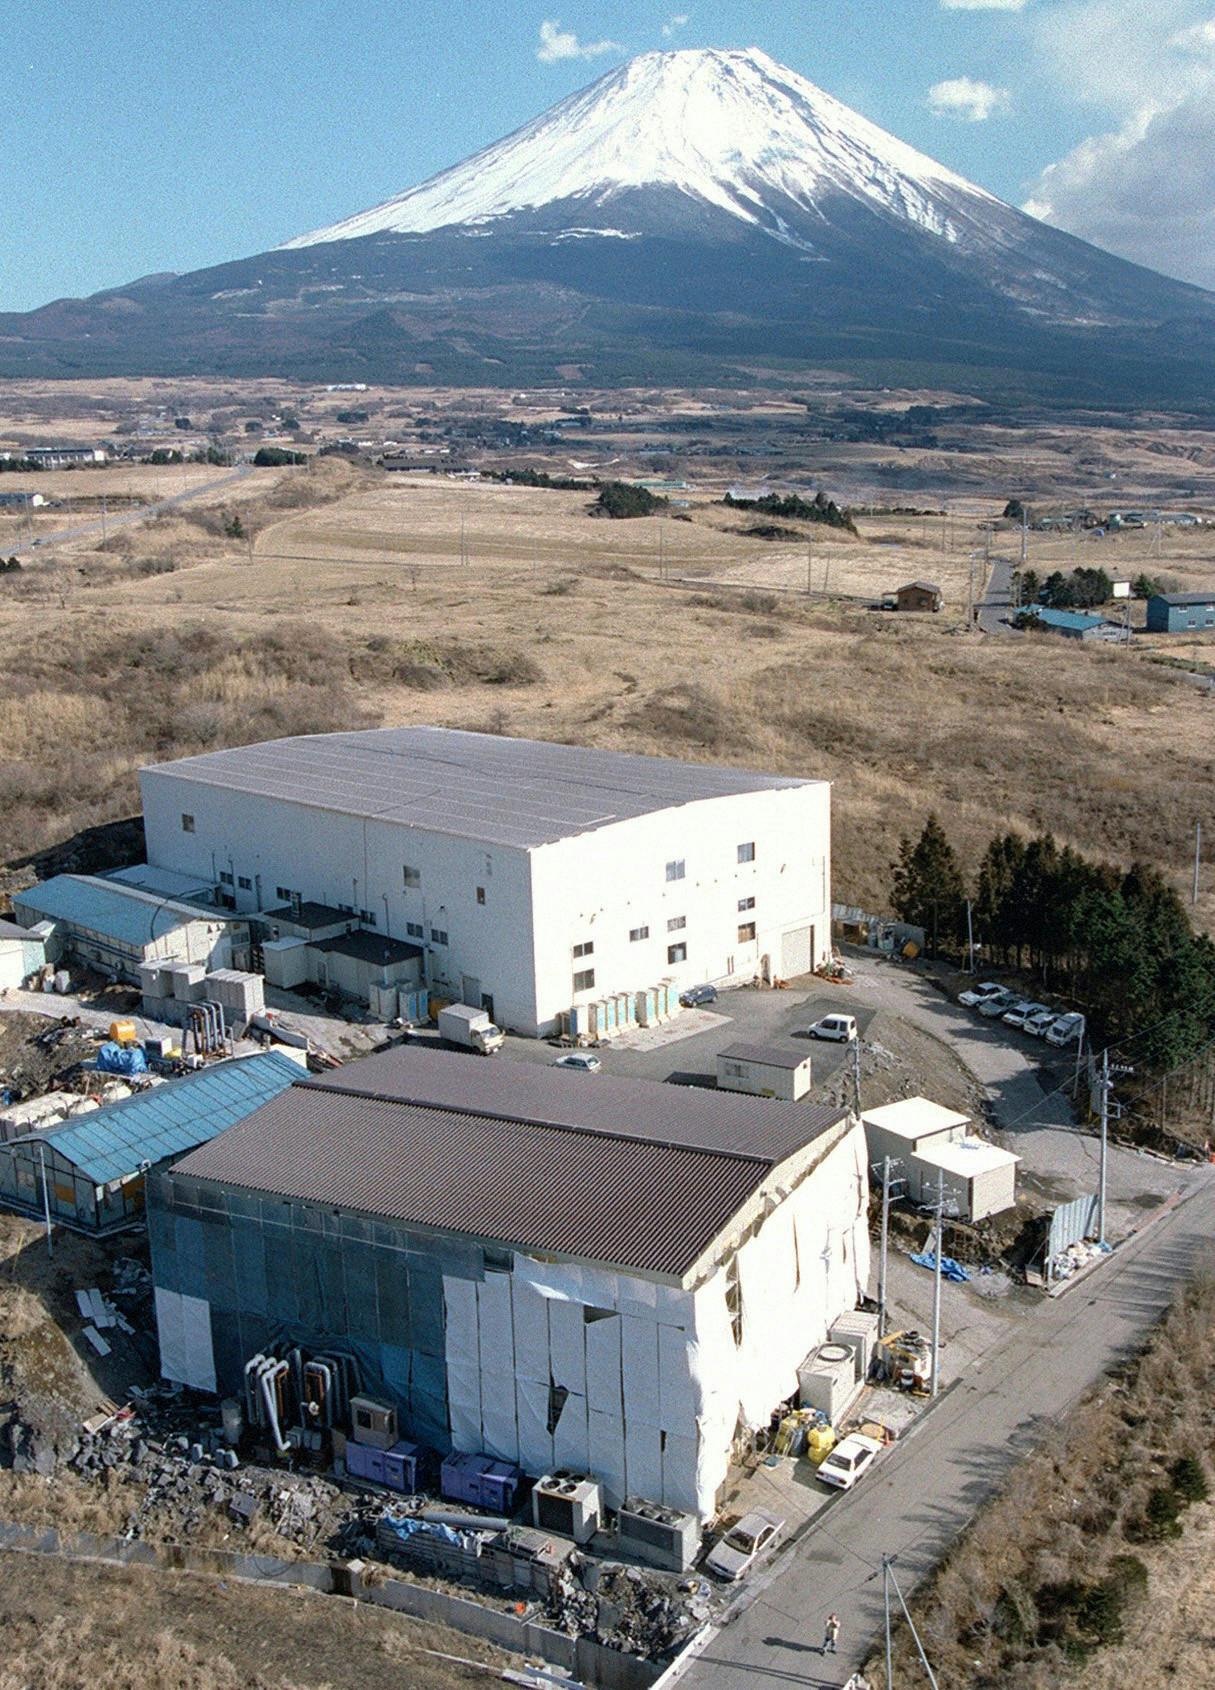 Luftfoto af dommedagskultens fabriksanlæg i en landsby nær Fuji-bjerget, hvor der i al hemmelighed blev produceret nervegassen sarin.